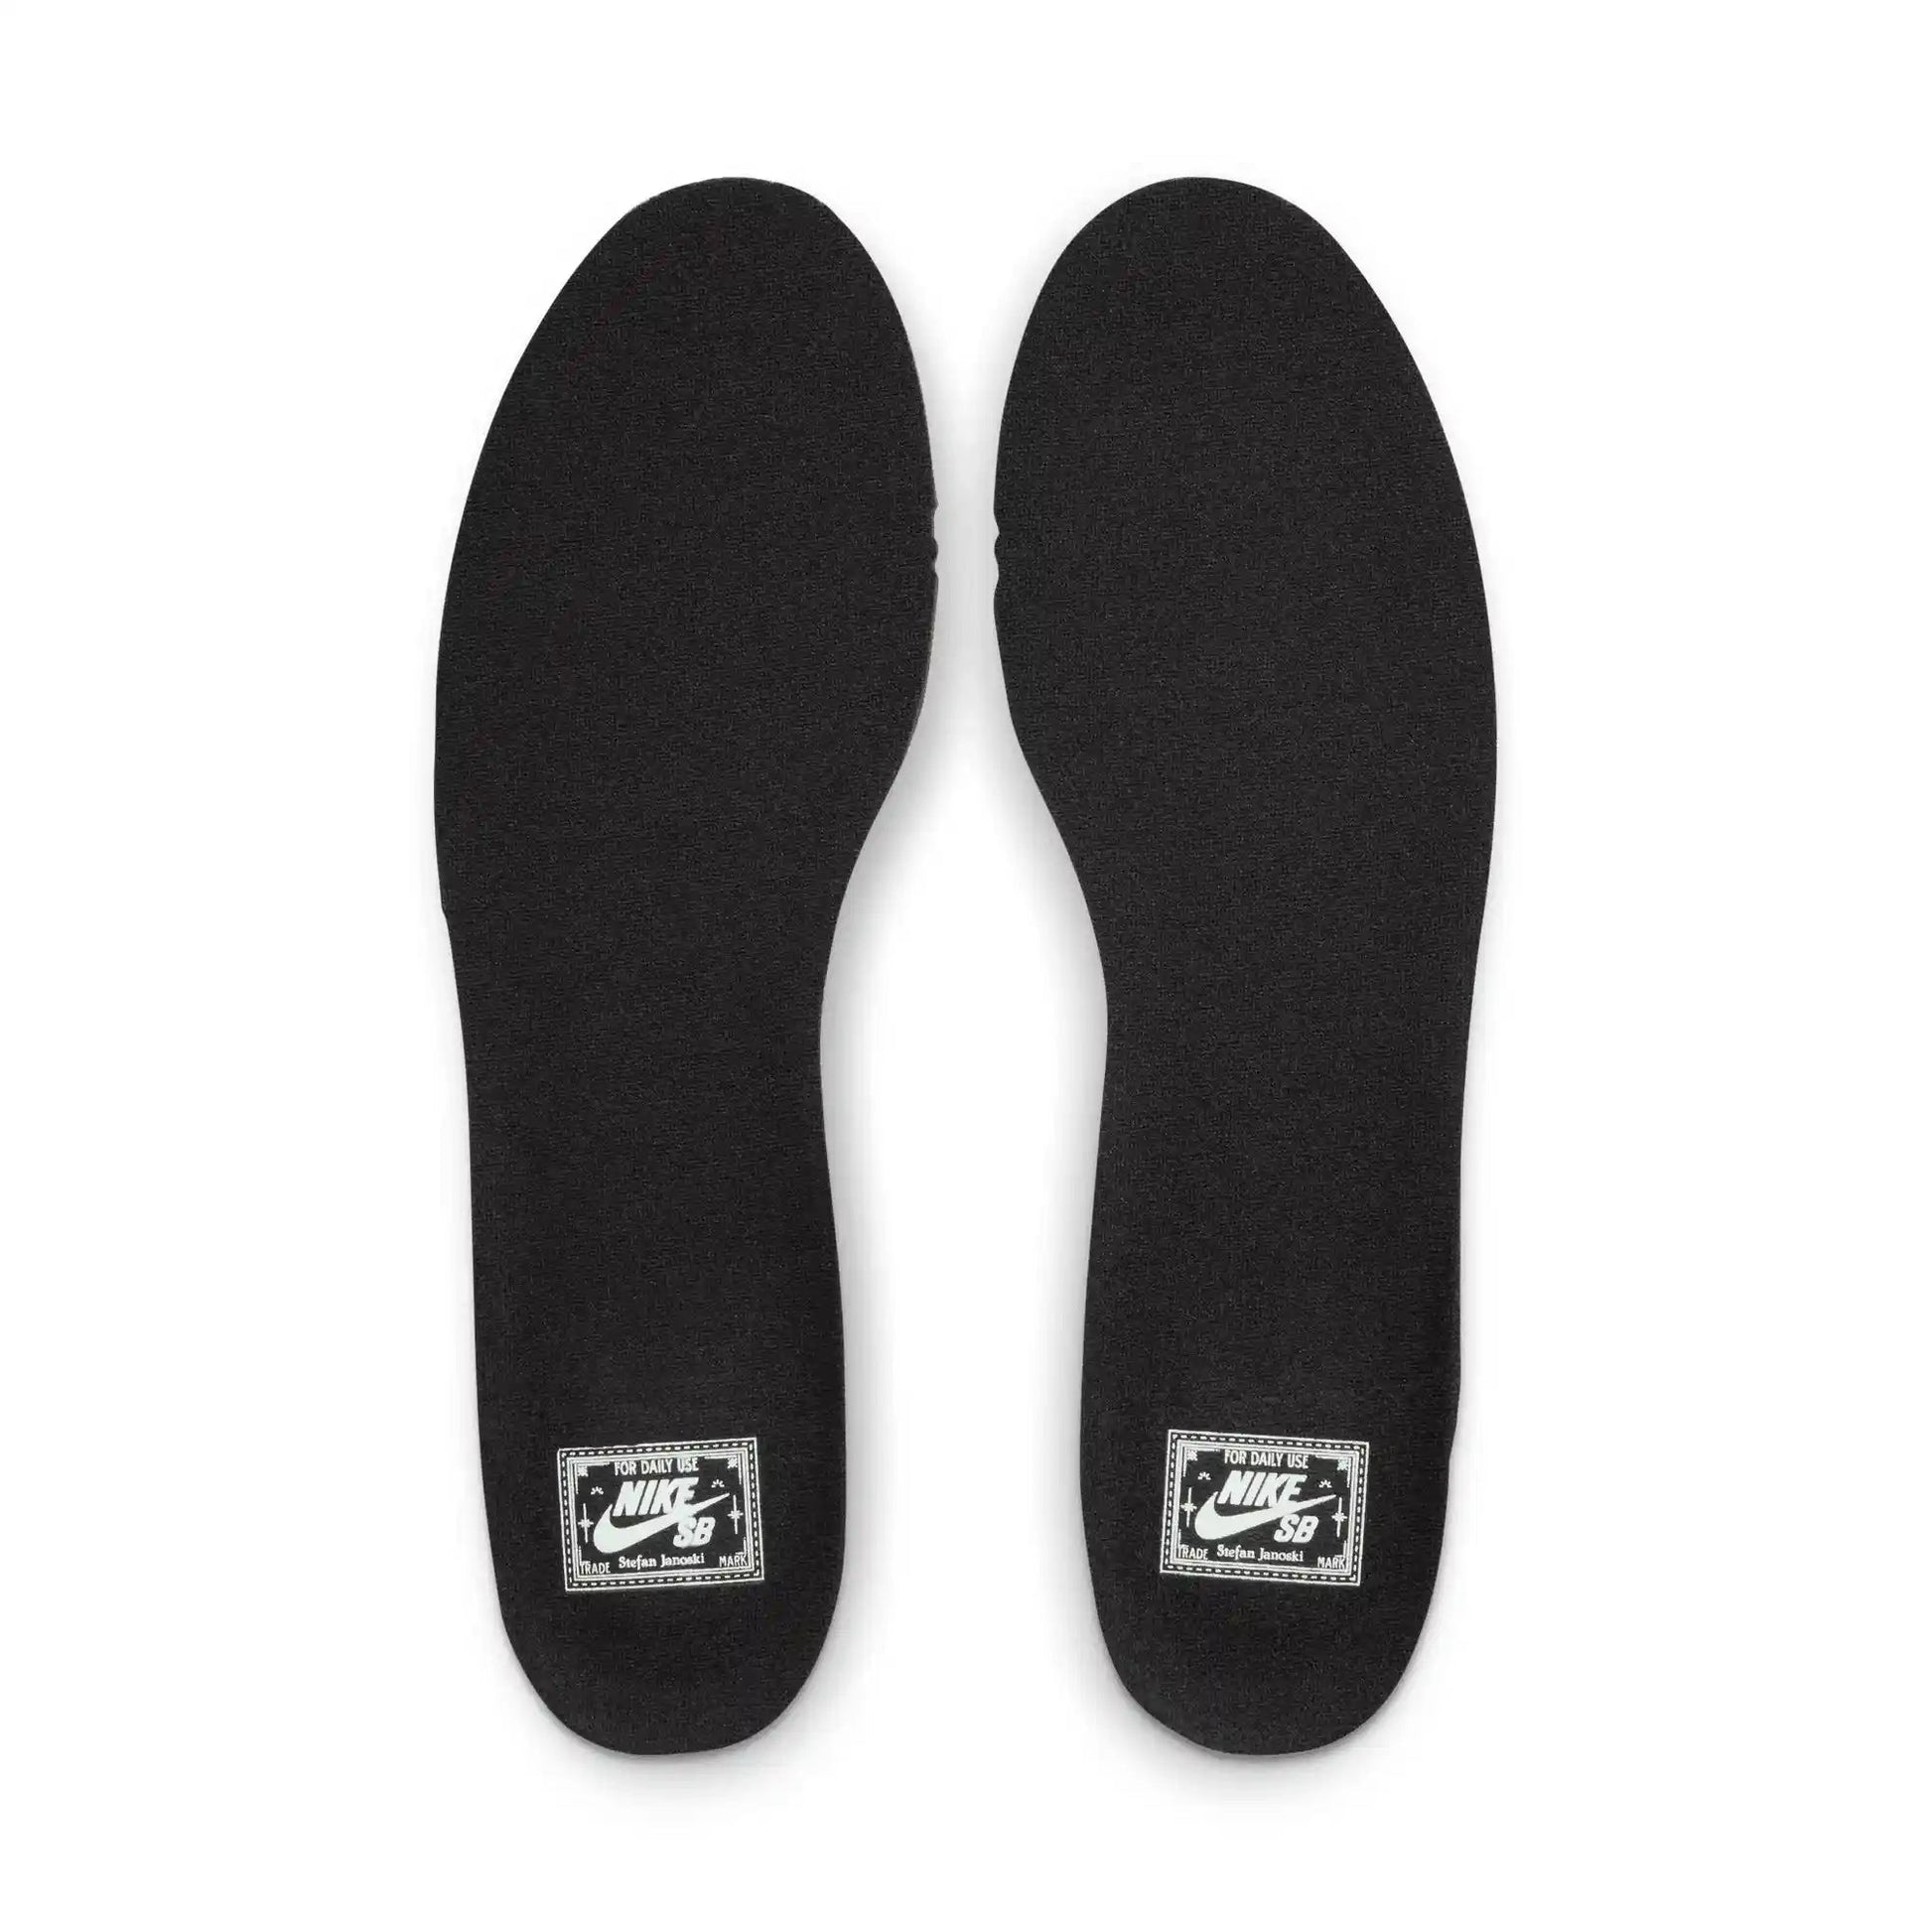 Nike SB Zoom Janoski OG+, black/white - Tiki Room Skateboards - 7